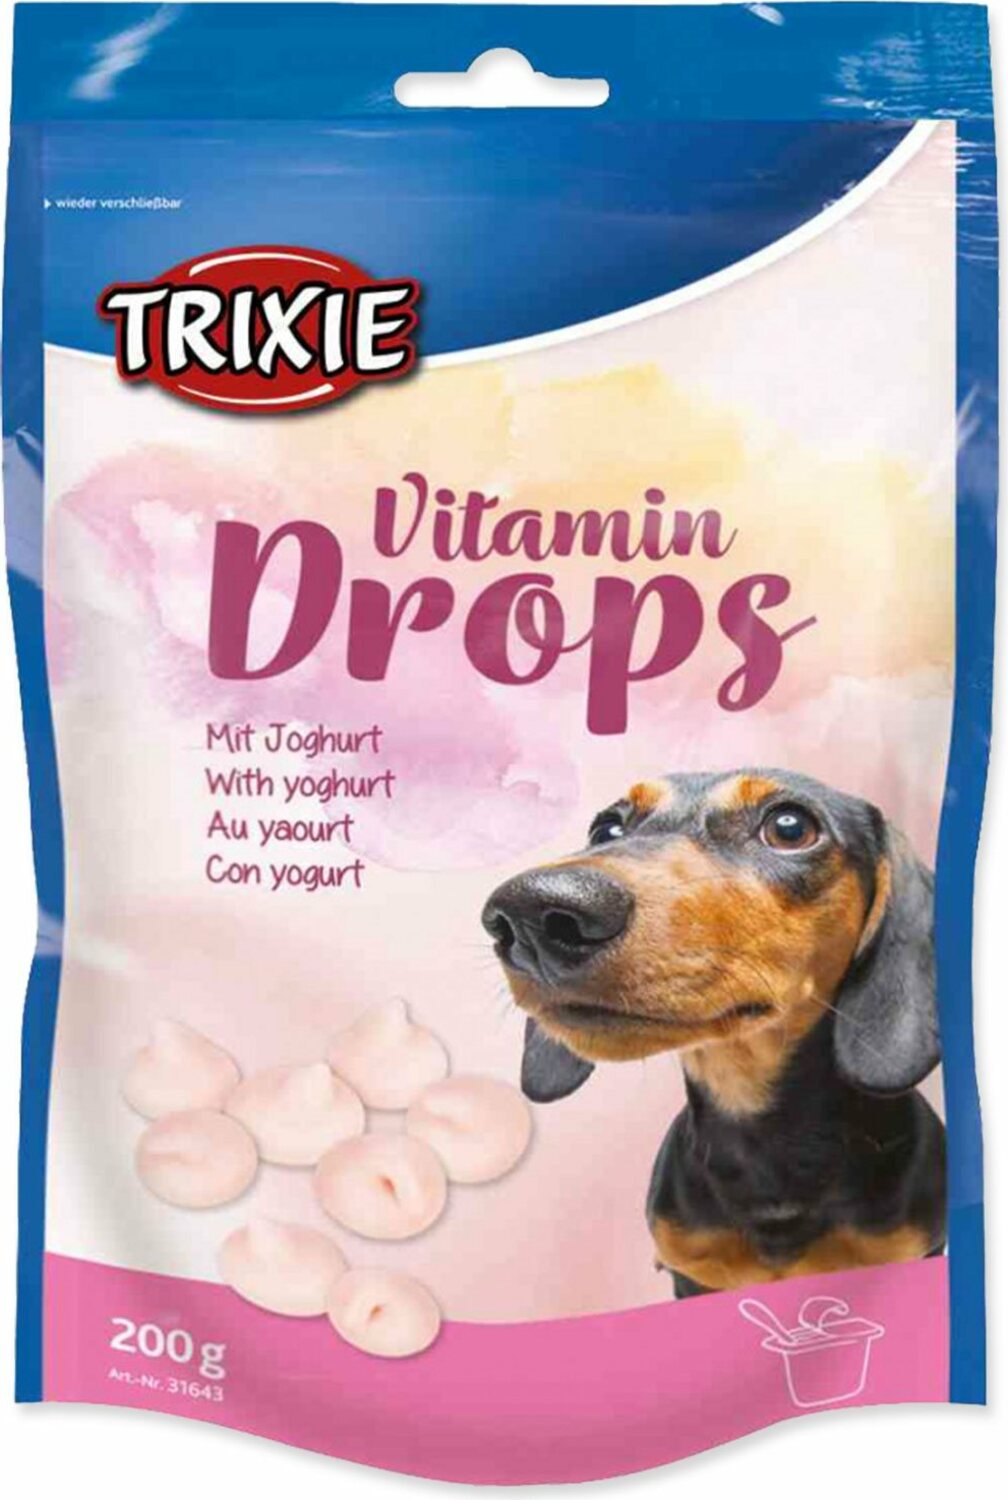 Pochoutka Trixie Dropsy vitamínové s jogurtem 200g